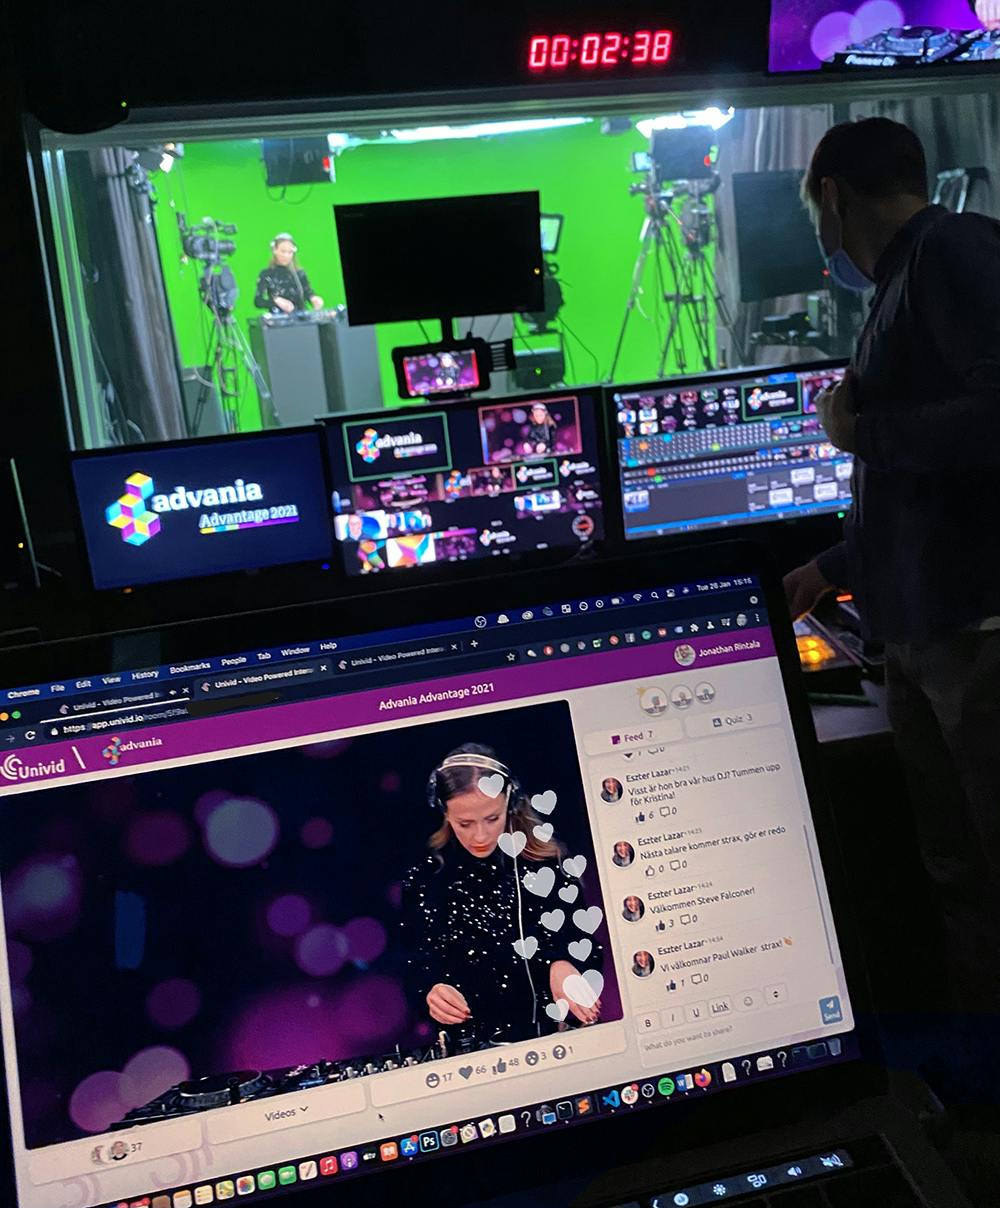 Ett digitalt studioevent med Advania - Advantage 2021 - livesändes på Univid med frågesport, chatt, emojis och digital quiz. Fantastisk livemusik med DJ Kristina i Twenty Studios green screen studio.